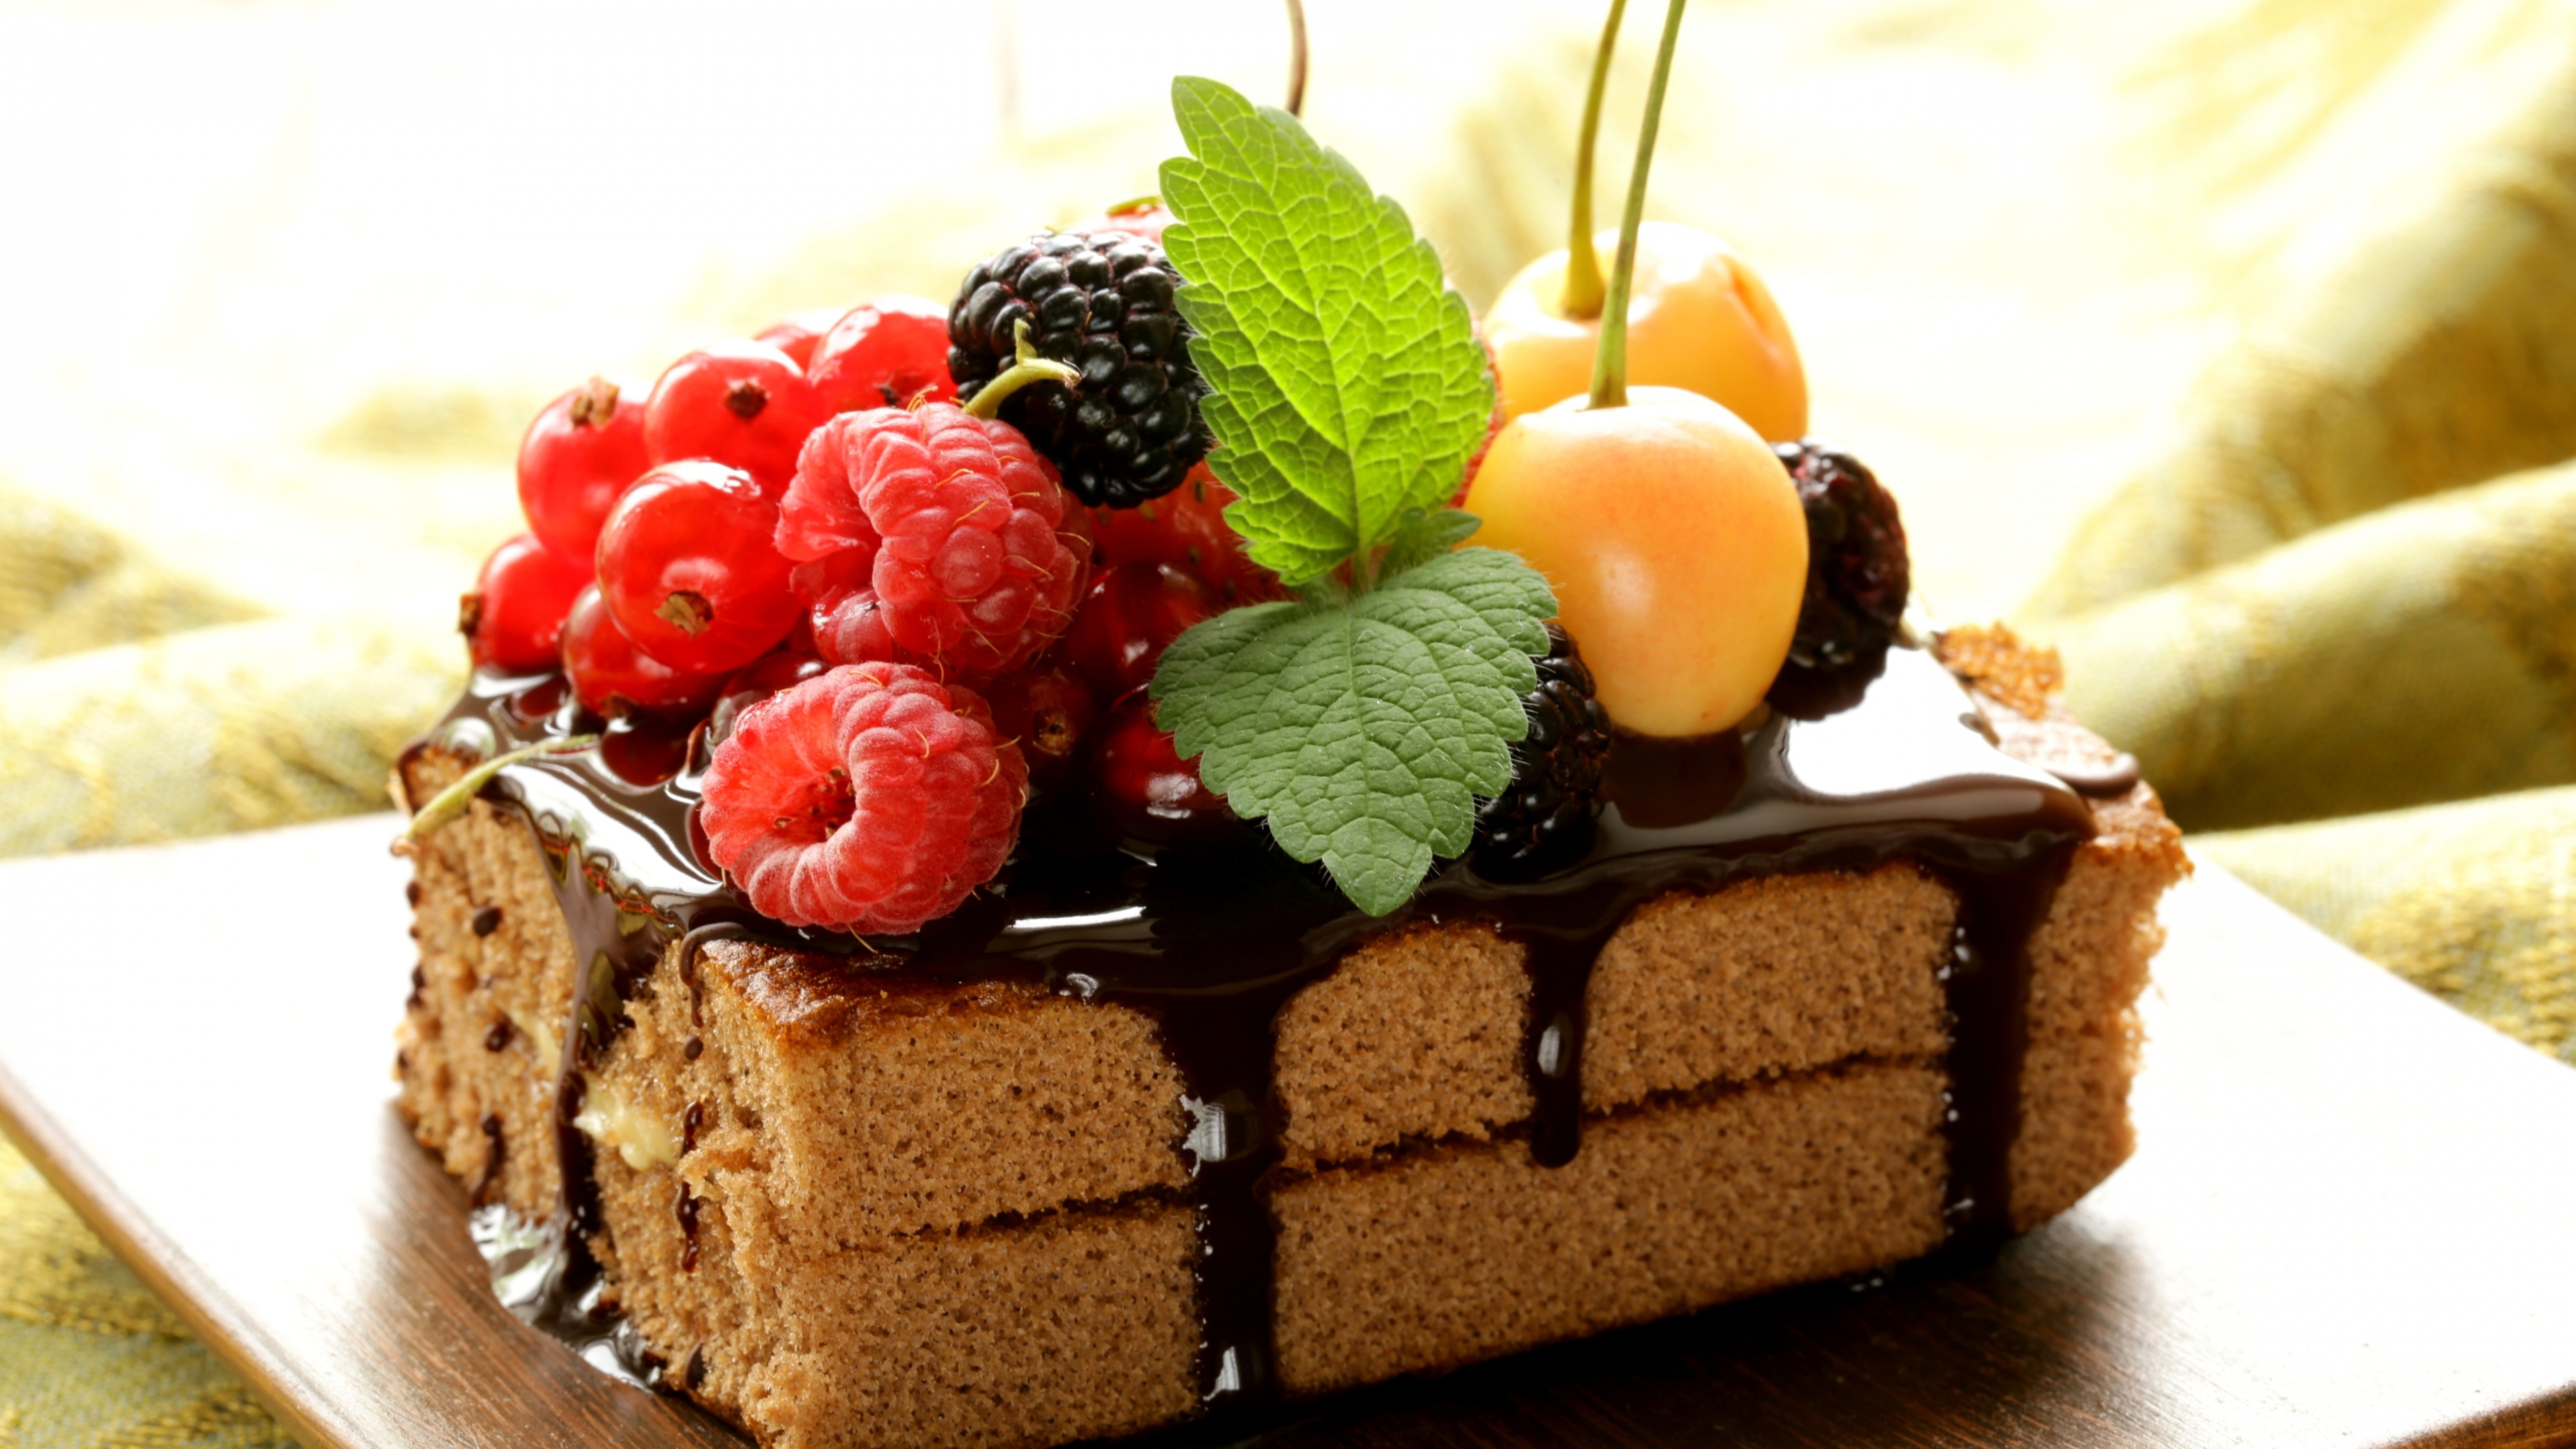 General 3840x2160 cake chocolate fruit food raspberries blackberries cherries